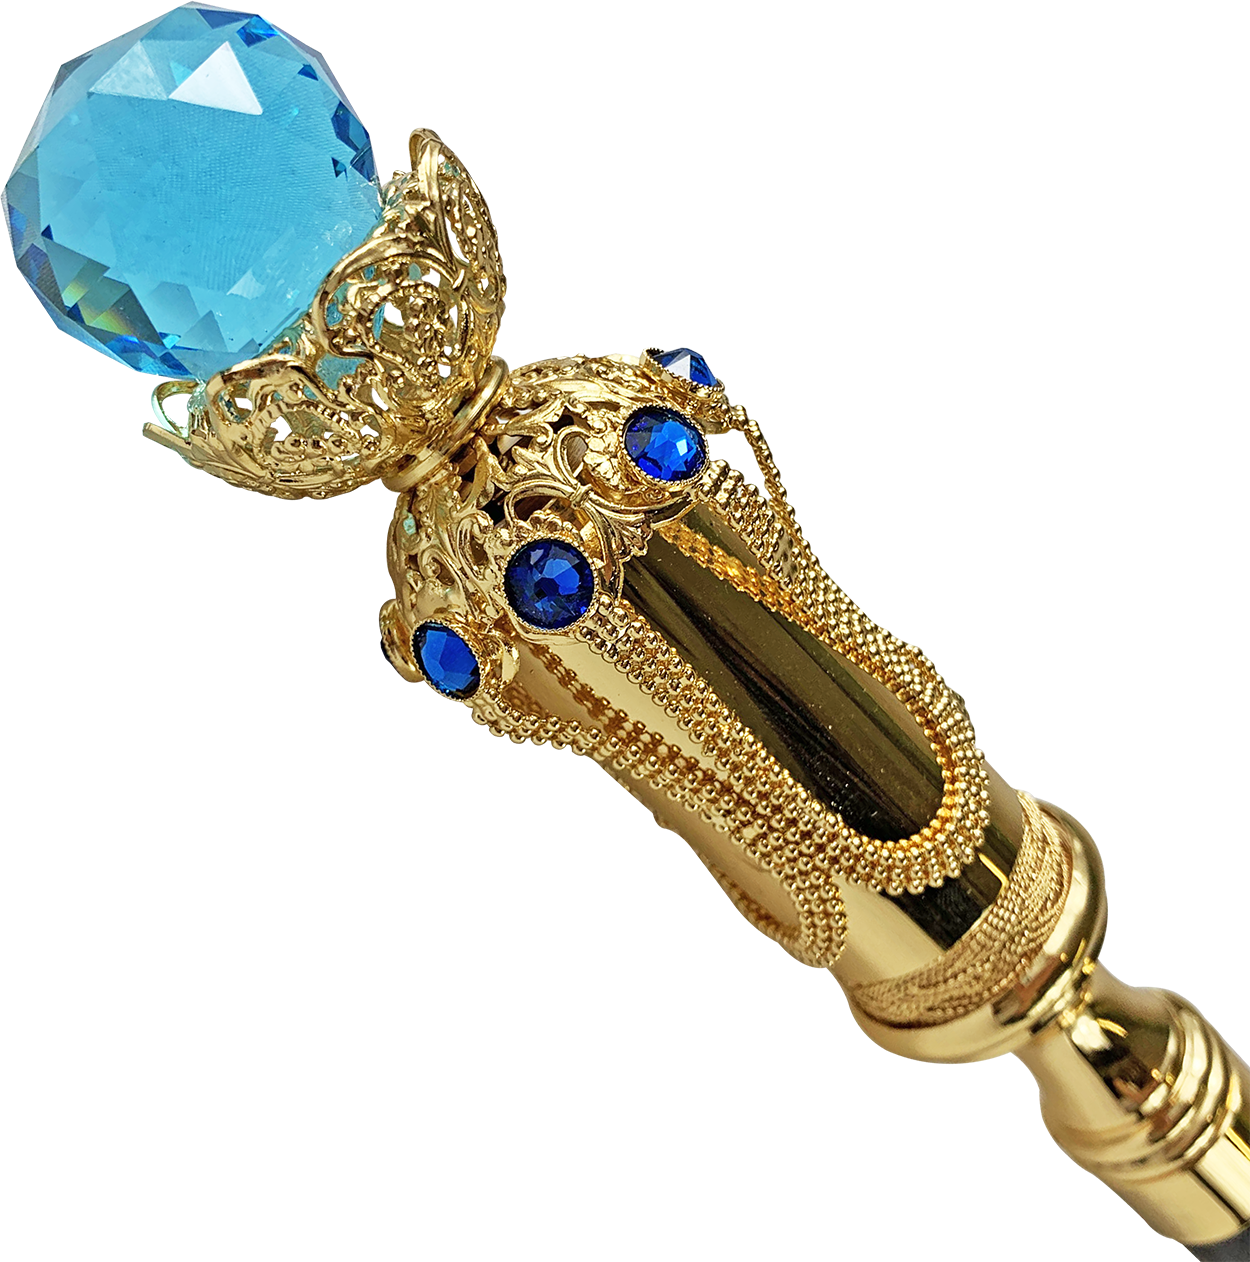 Wonderful mylord walking cane with big Aqua crystal